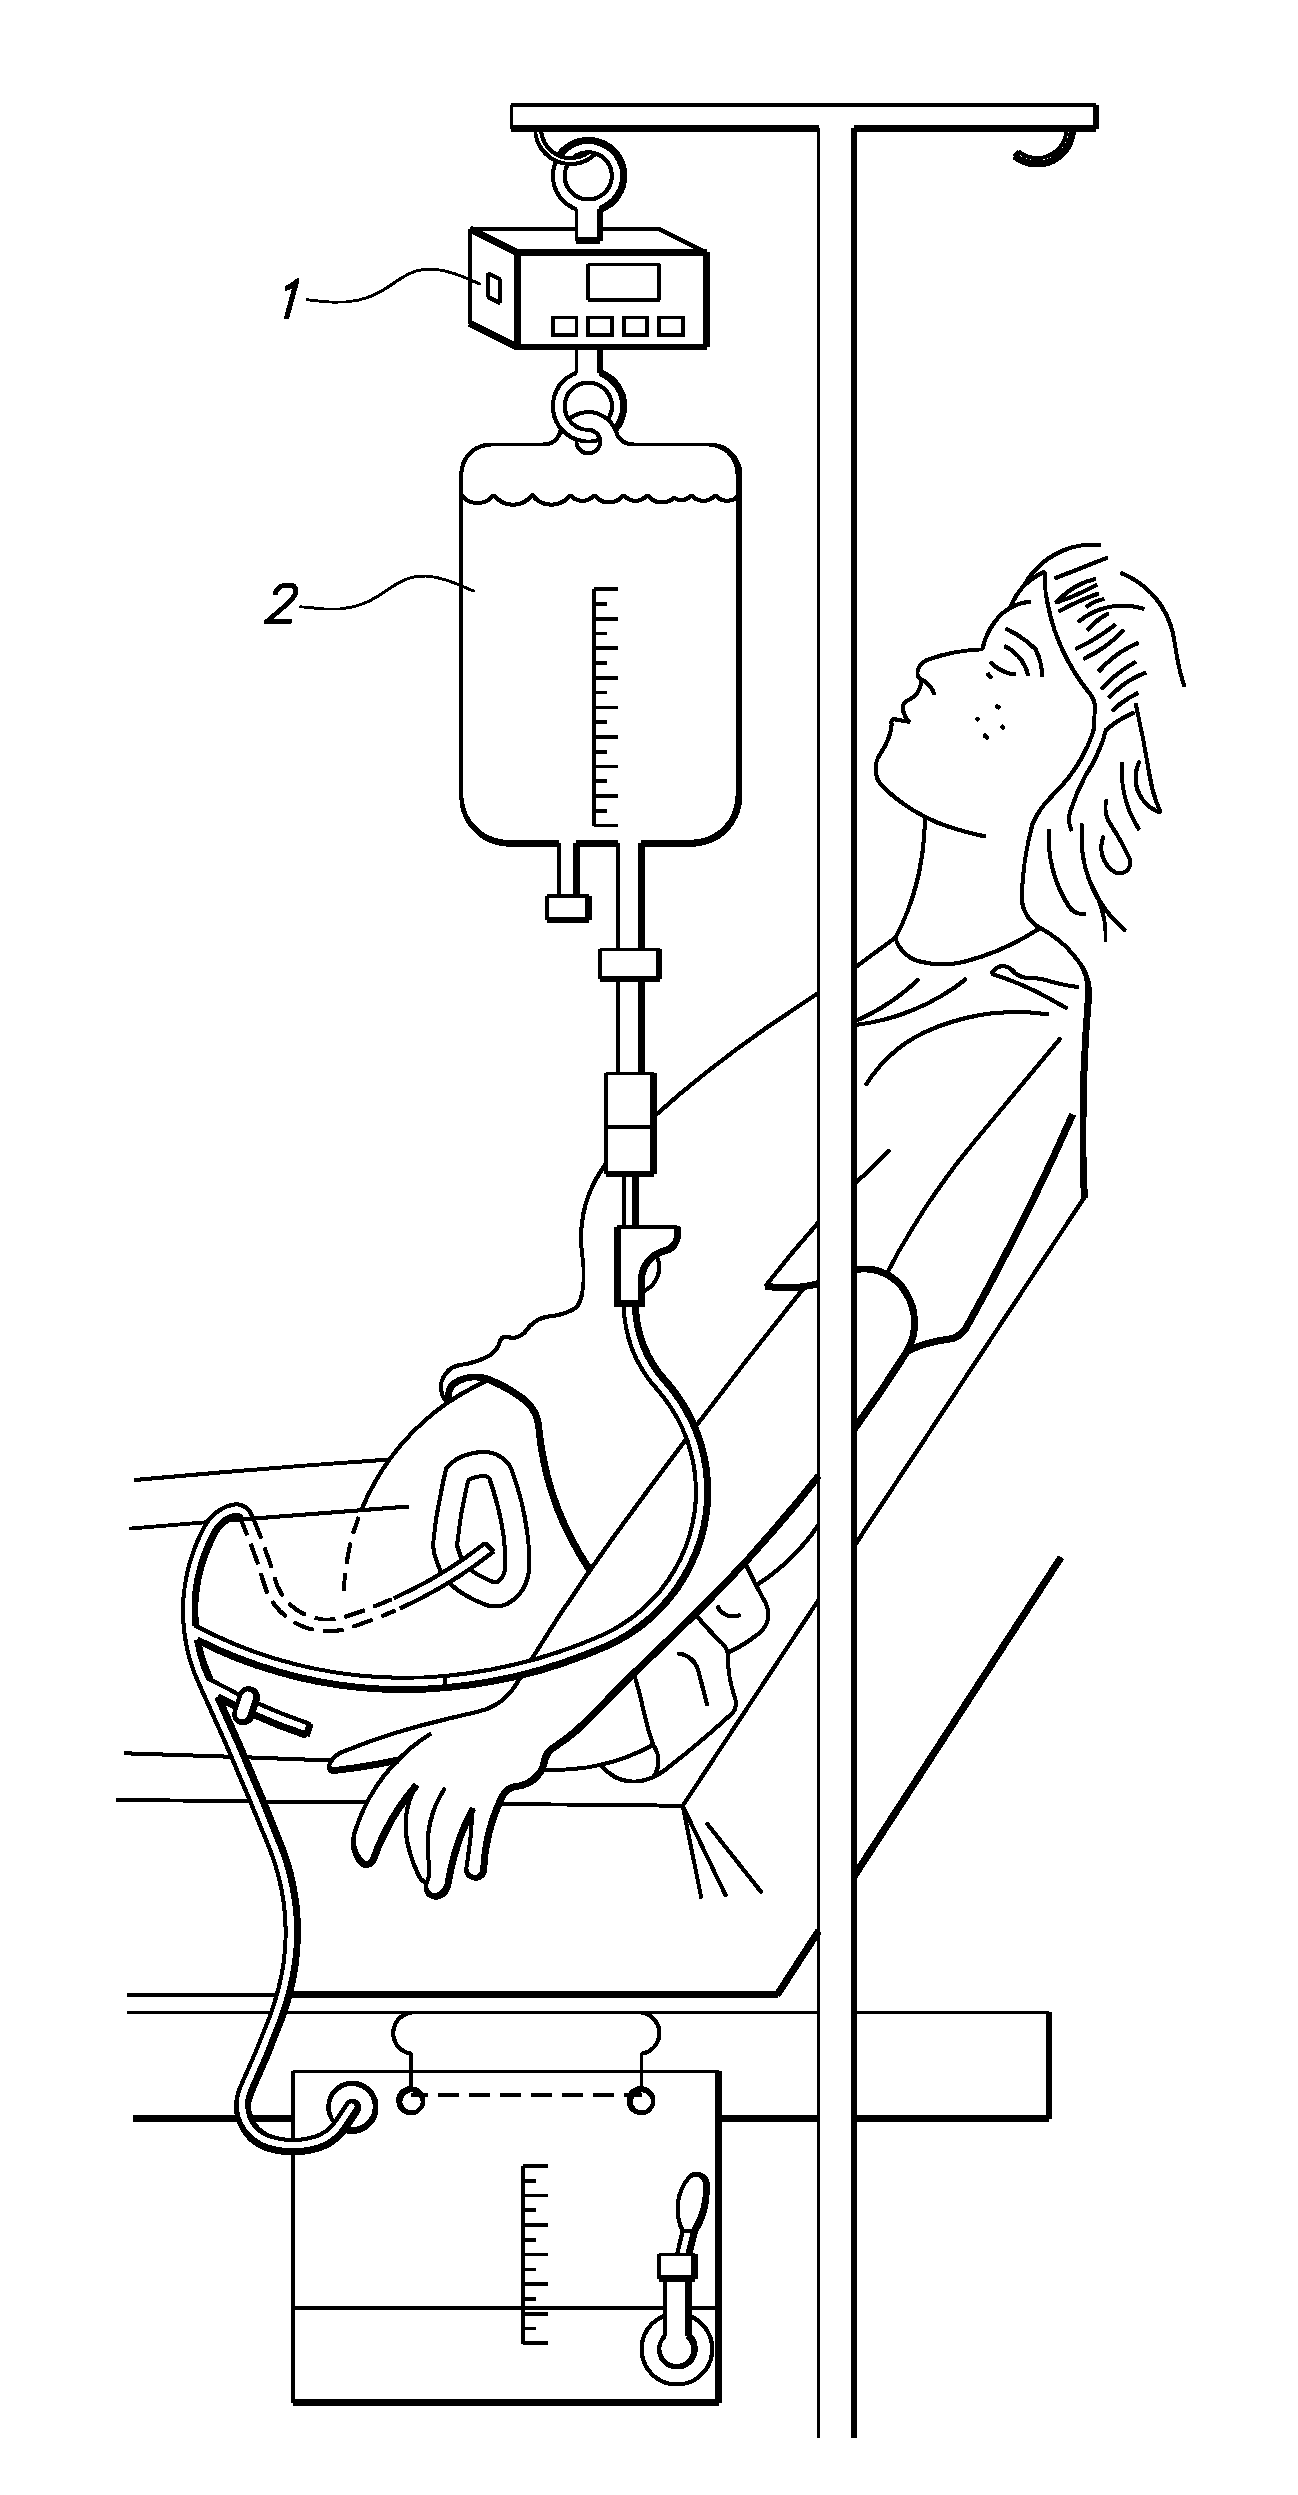 Continuous bladder irrigation alarm